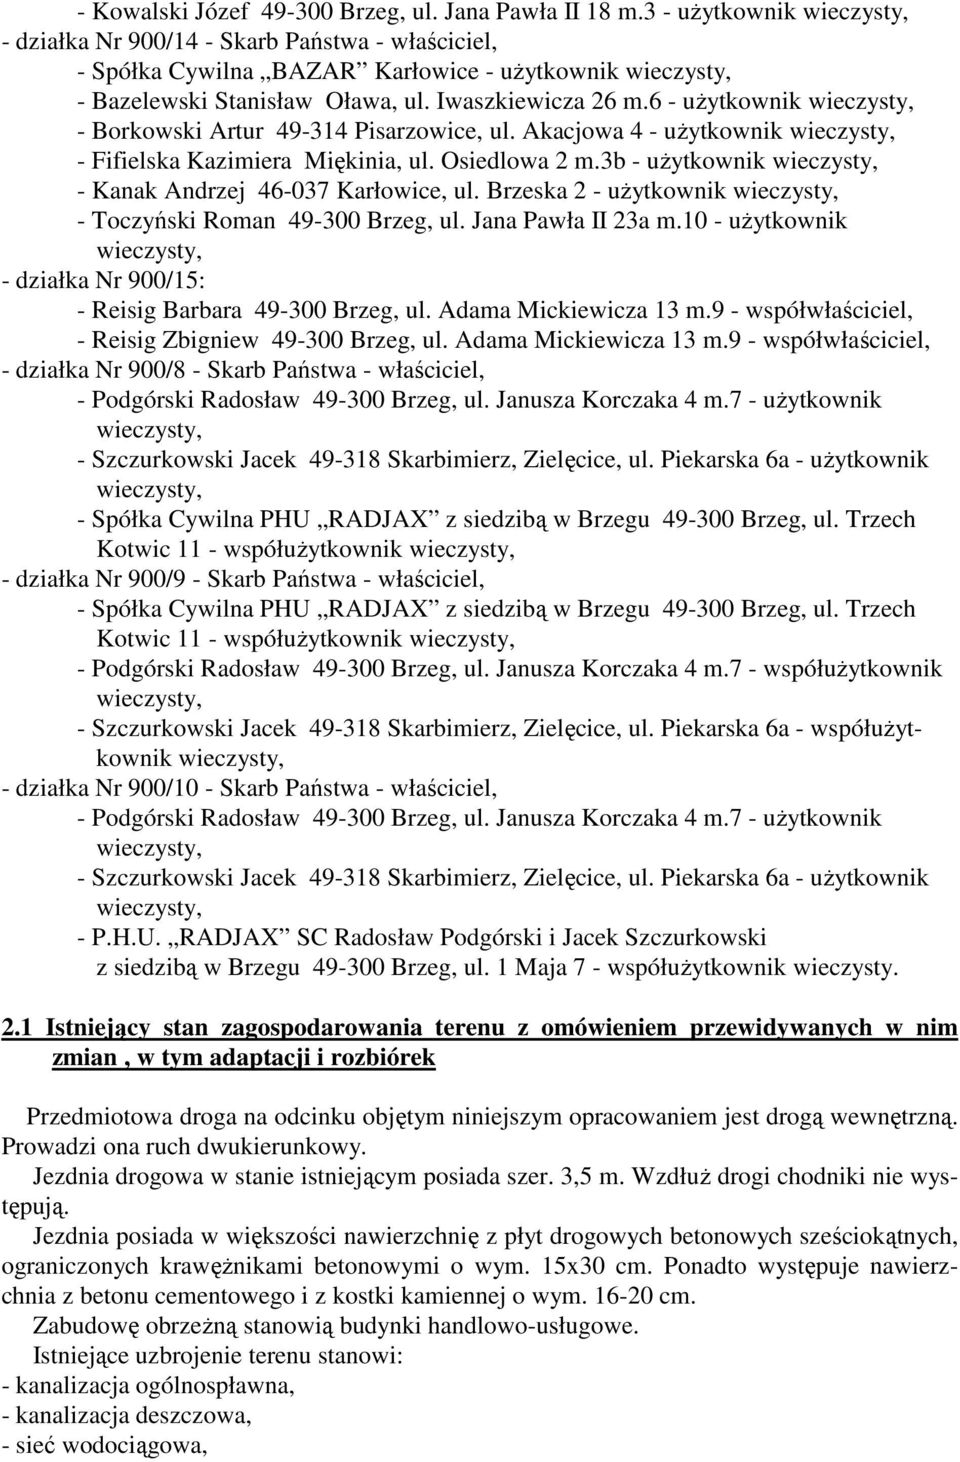 3b - uŝytkownik - Kanak Andrzej 46-037 Karłowice, ul. Brzeska 2 - uŝytkownik - Toczyński Roman 49-300 Brzeg, ul. Jana Pawła II 23a m.